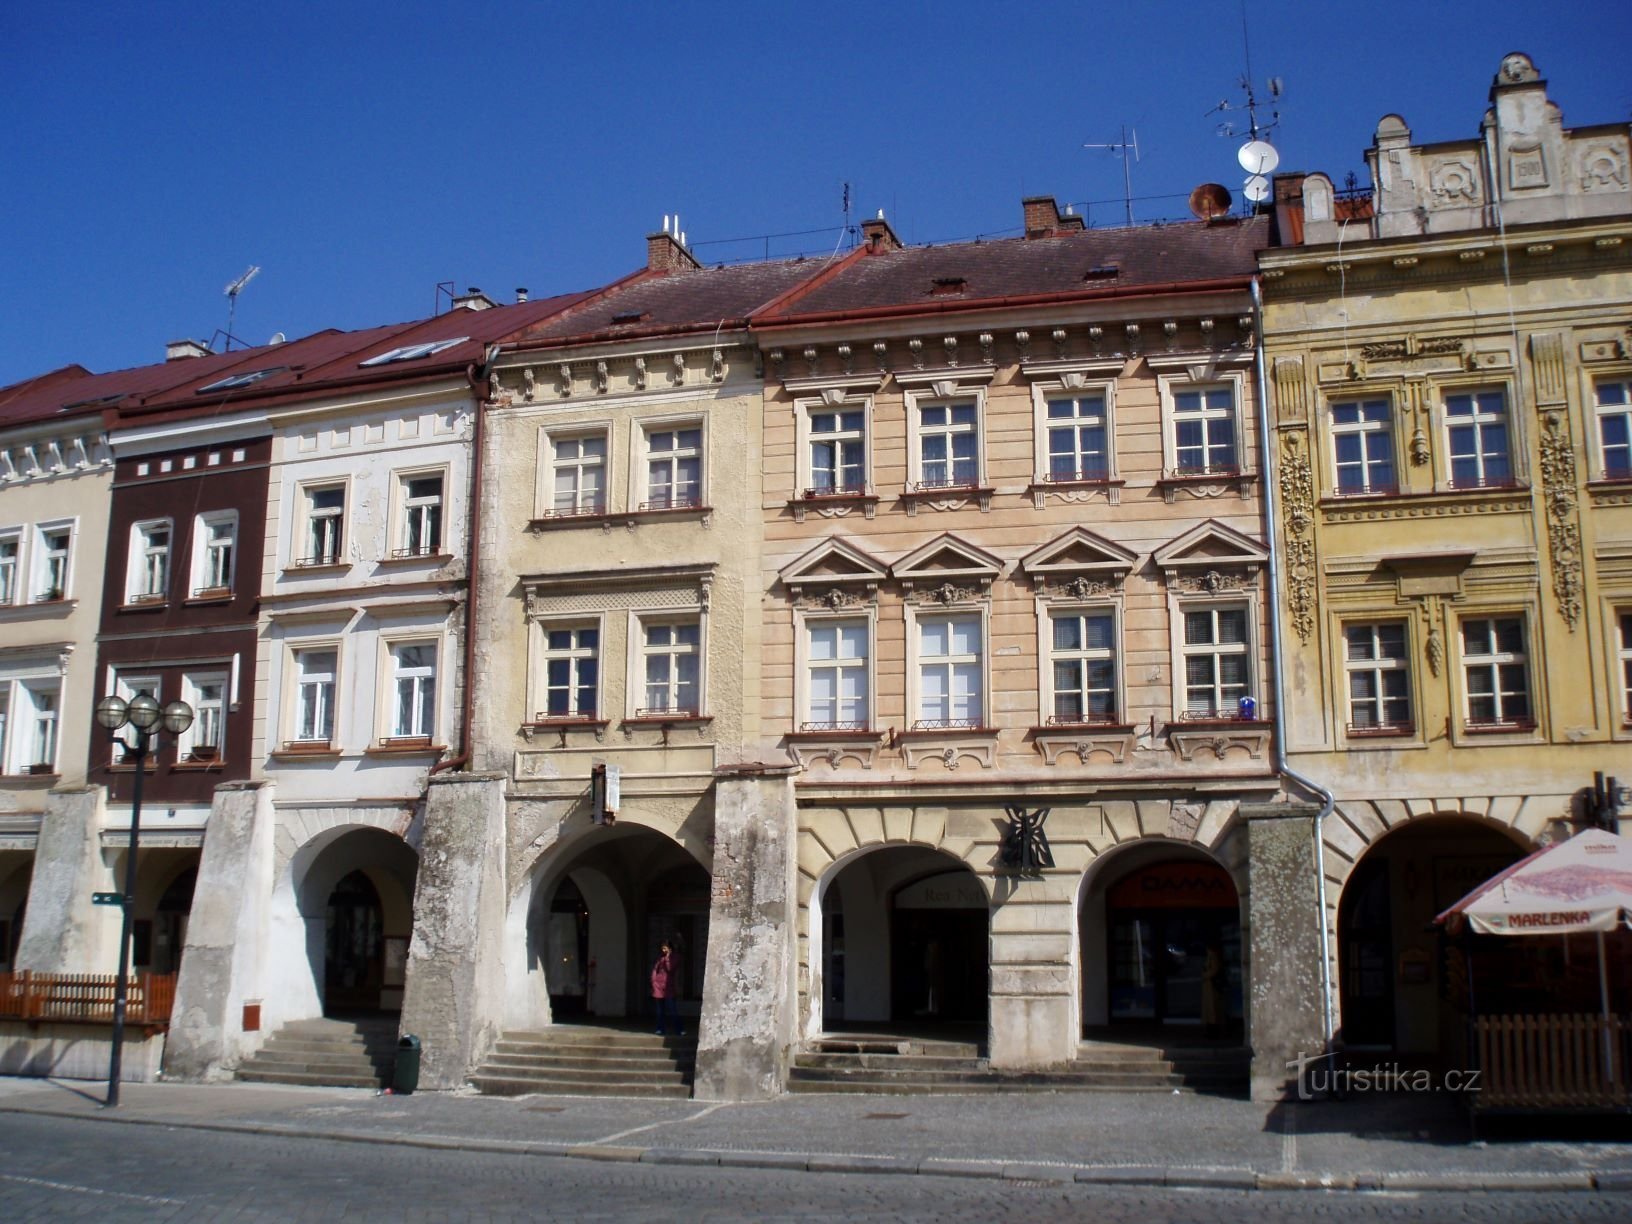 Velké náměstí nr. 157-154 (Hradec Králové, 17.4.2010. april XNUMX)